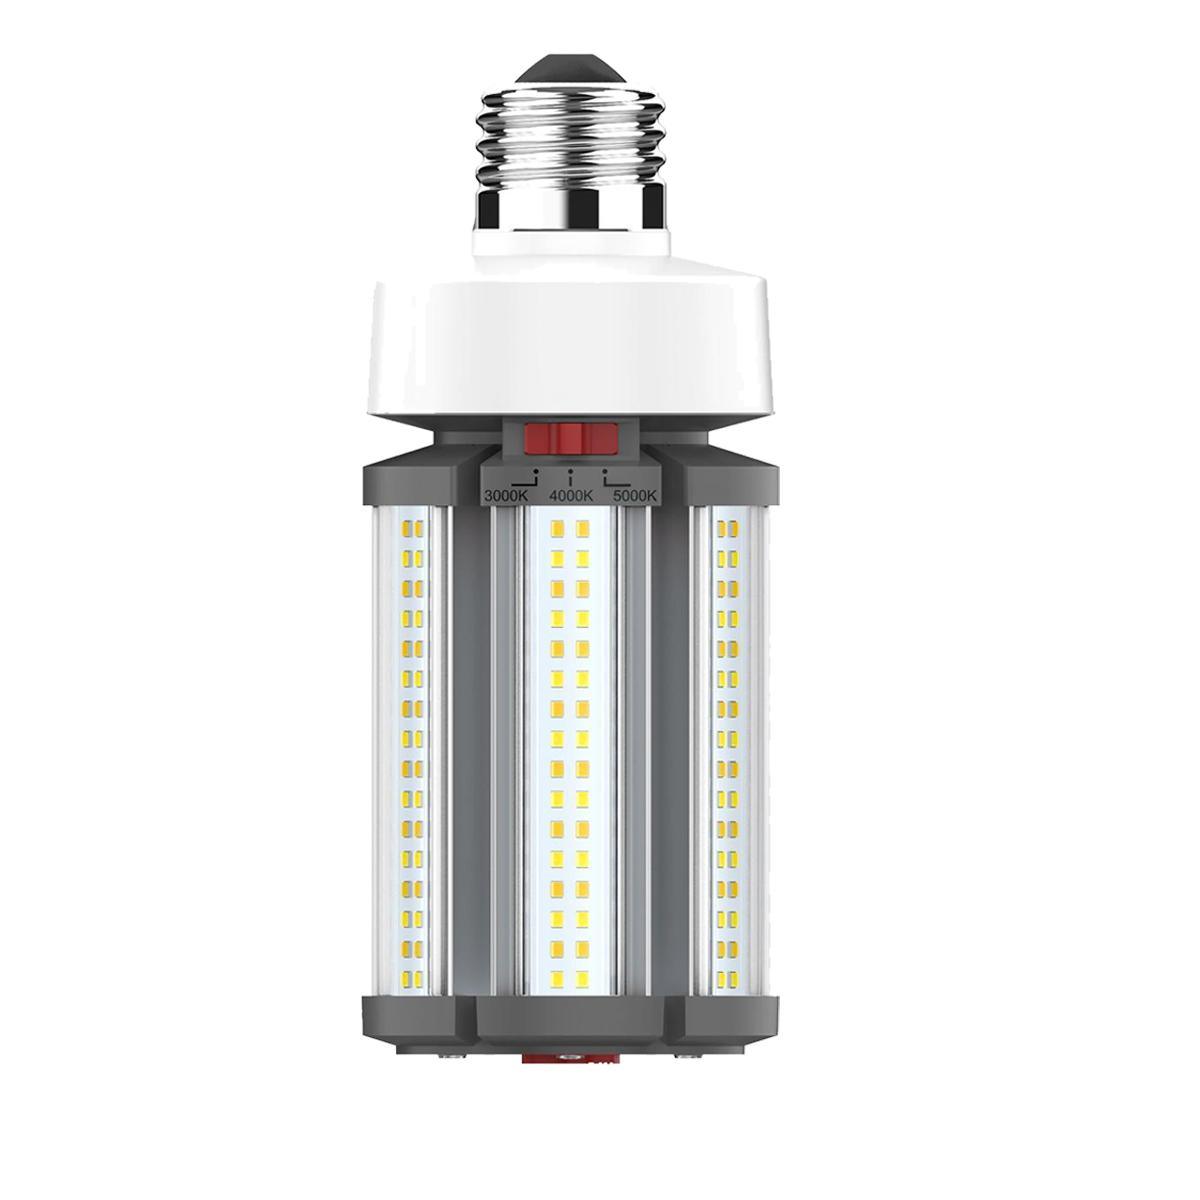 Hi-Pro Retrofit LED Corn Bulb, 45W, 6300 Lumens, Selectable CCT, 30K/40K/50K, E26 Base, 120-277V